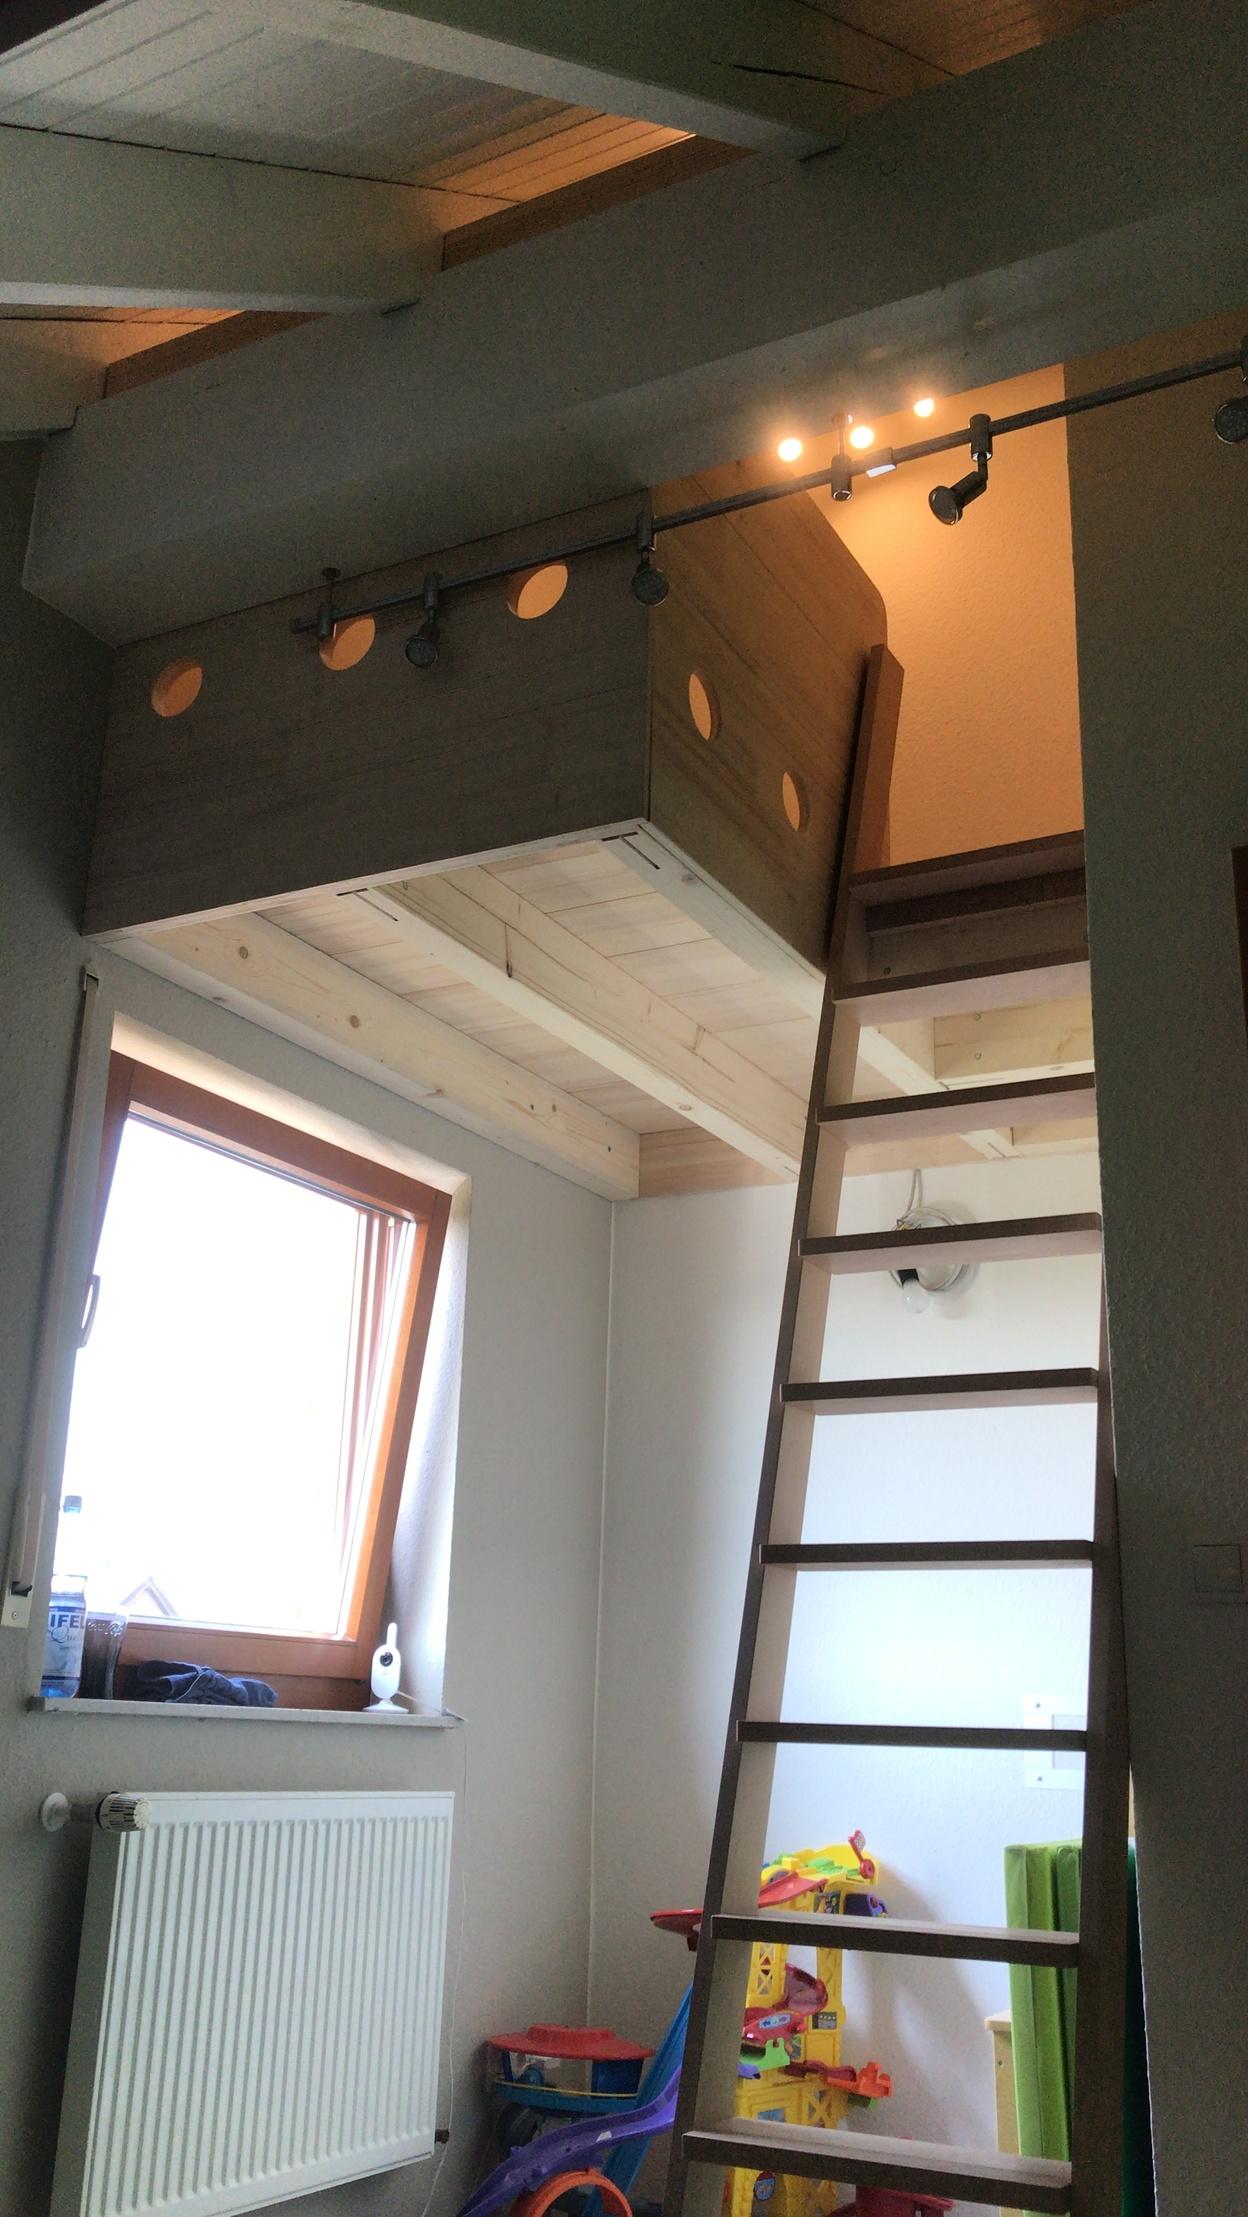 Ein Zimmer mit einem Hochbett aus hellem Holz, Leiter, Spielzeug und einem Fenster.